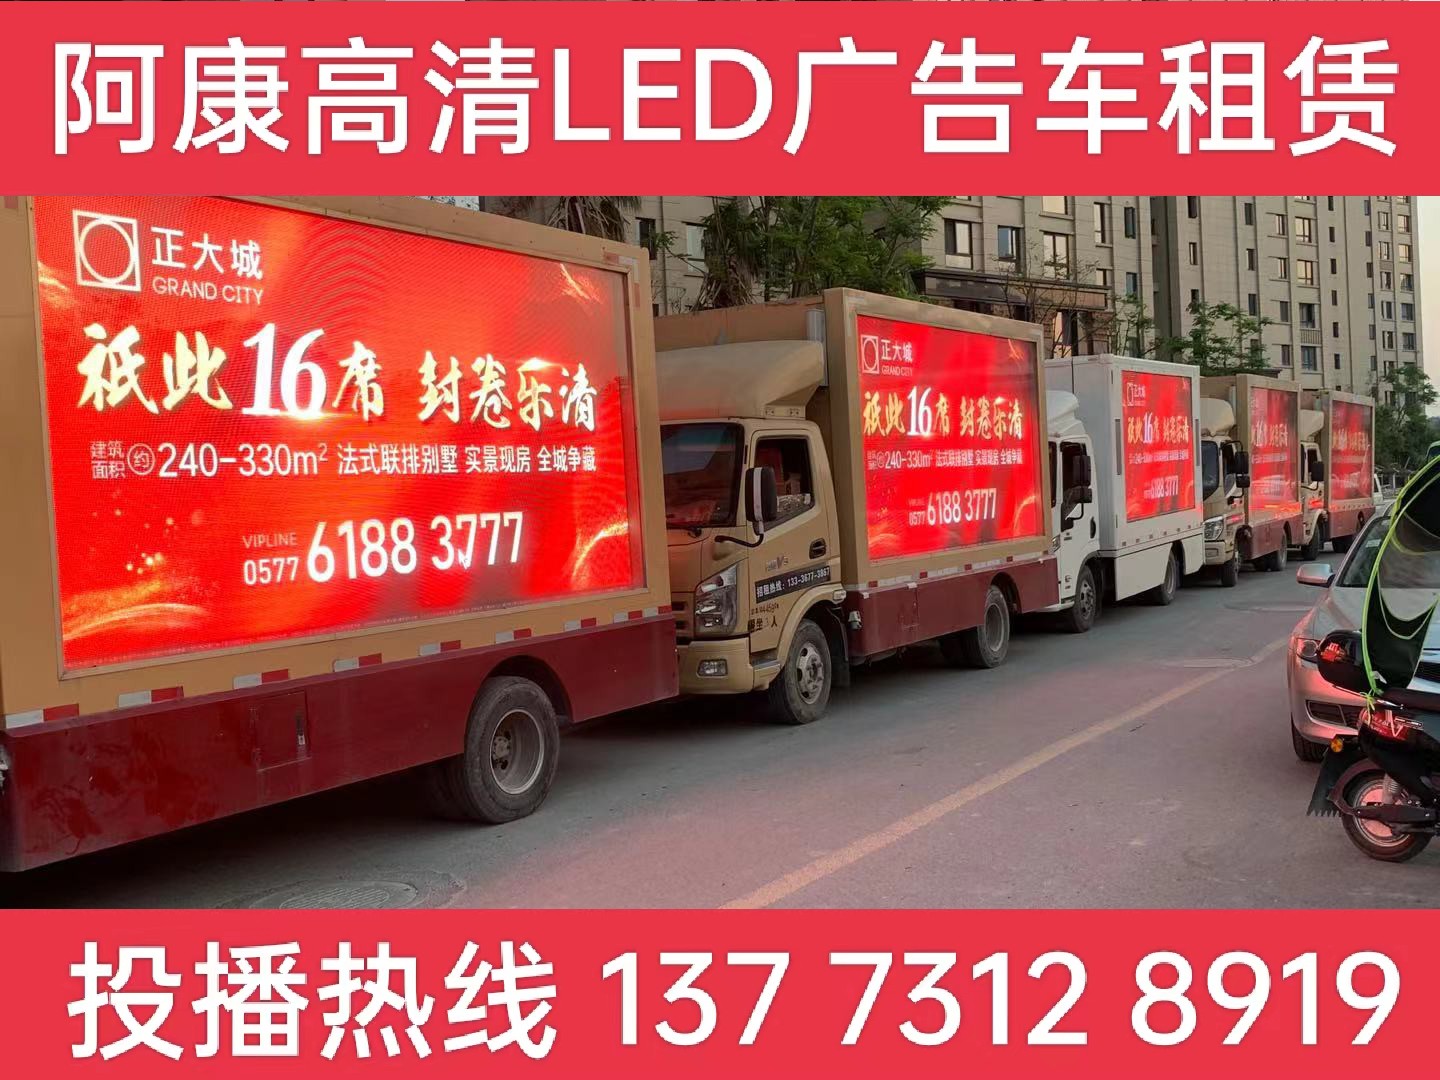 江阴LED广告车出租